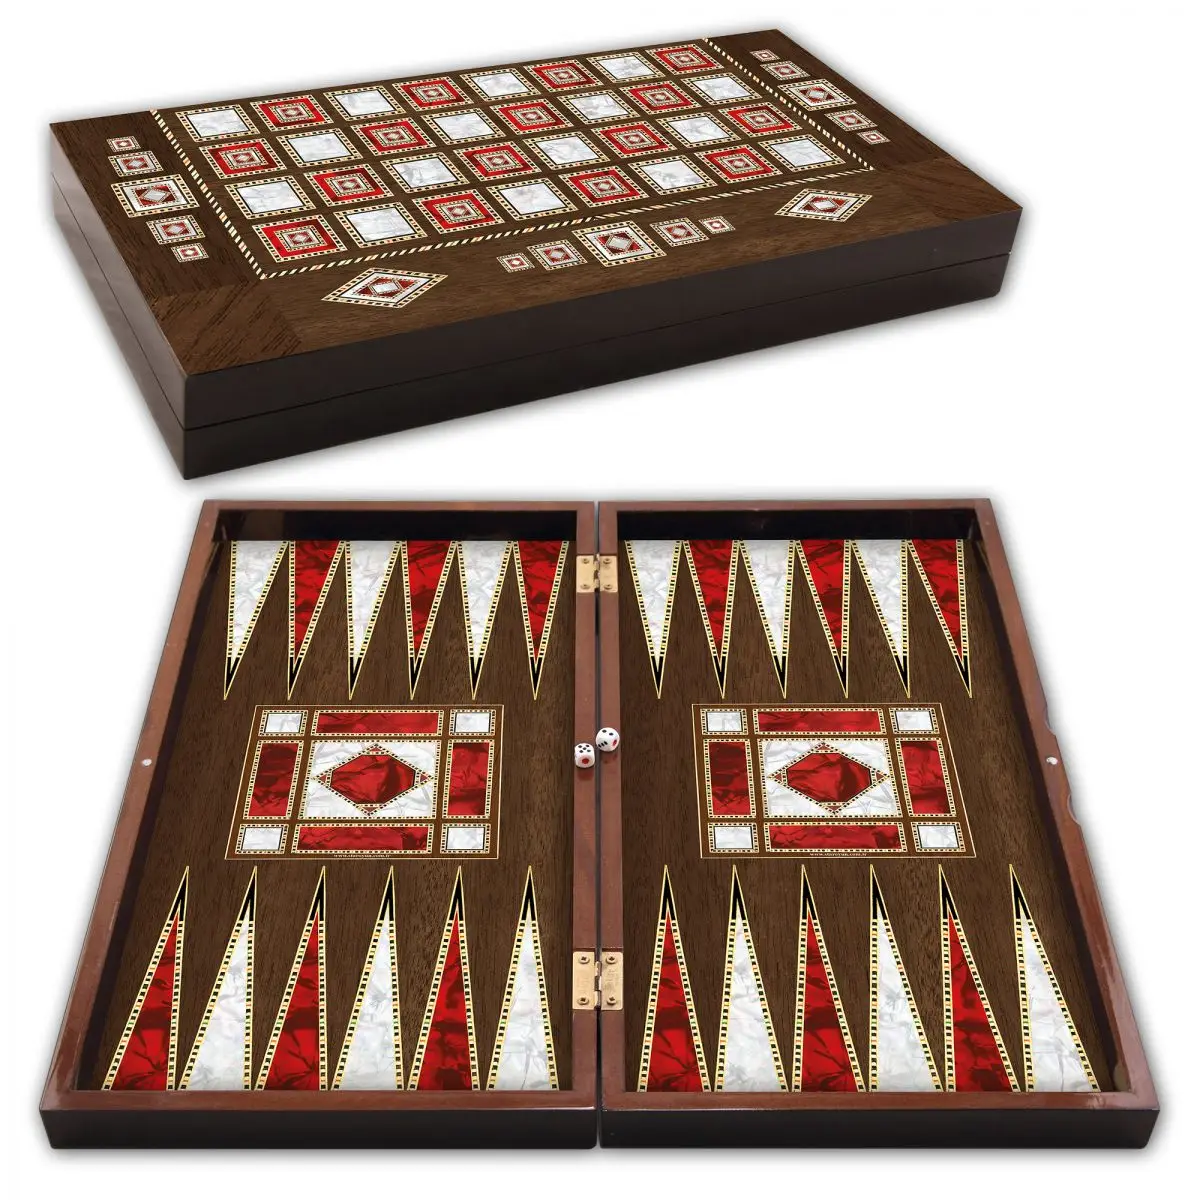 Tablero de damas de piedras de Backgammon y figuras de ajedrez, juego de lujo de madera con aspecto de perla de 44cm x 23cm, juego de regalo para niños y adultos